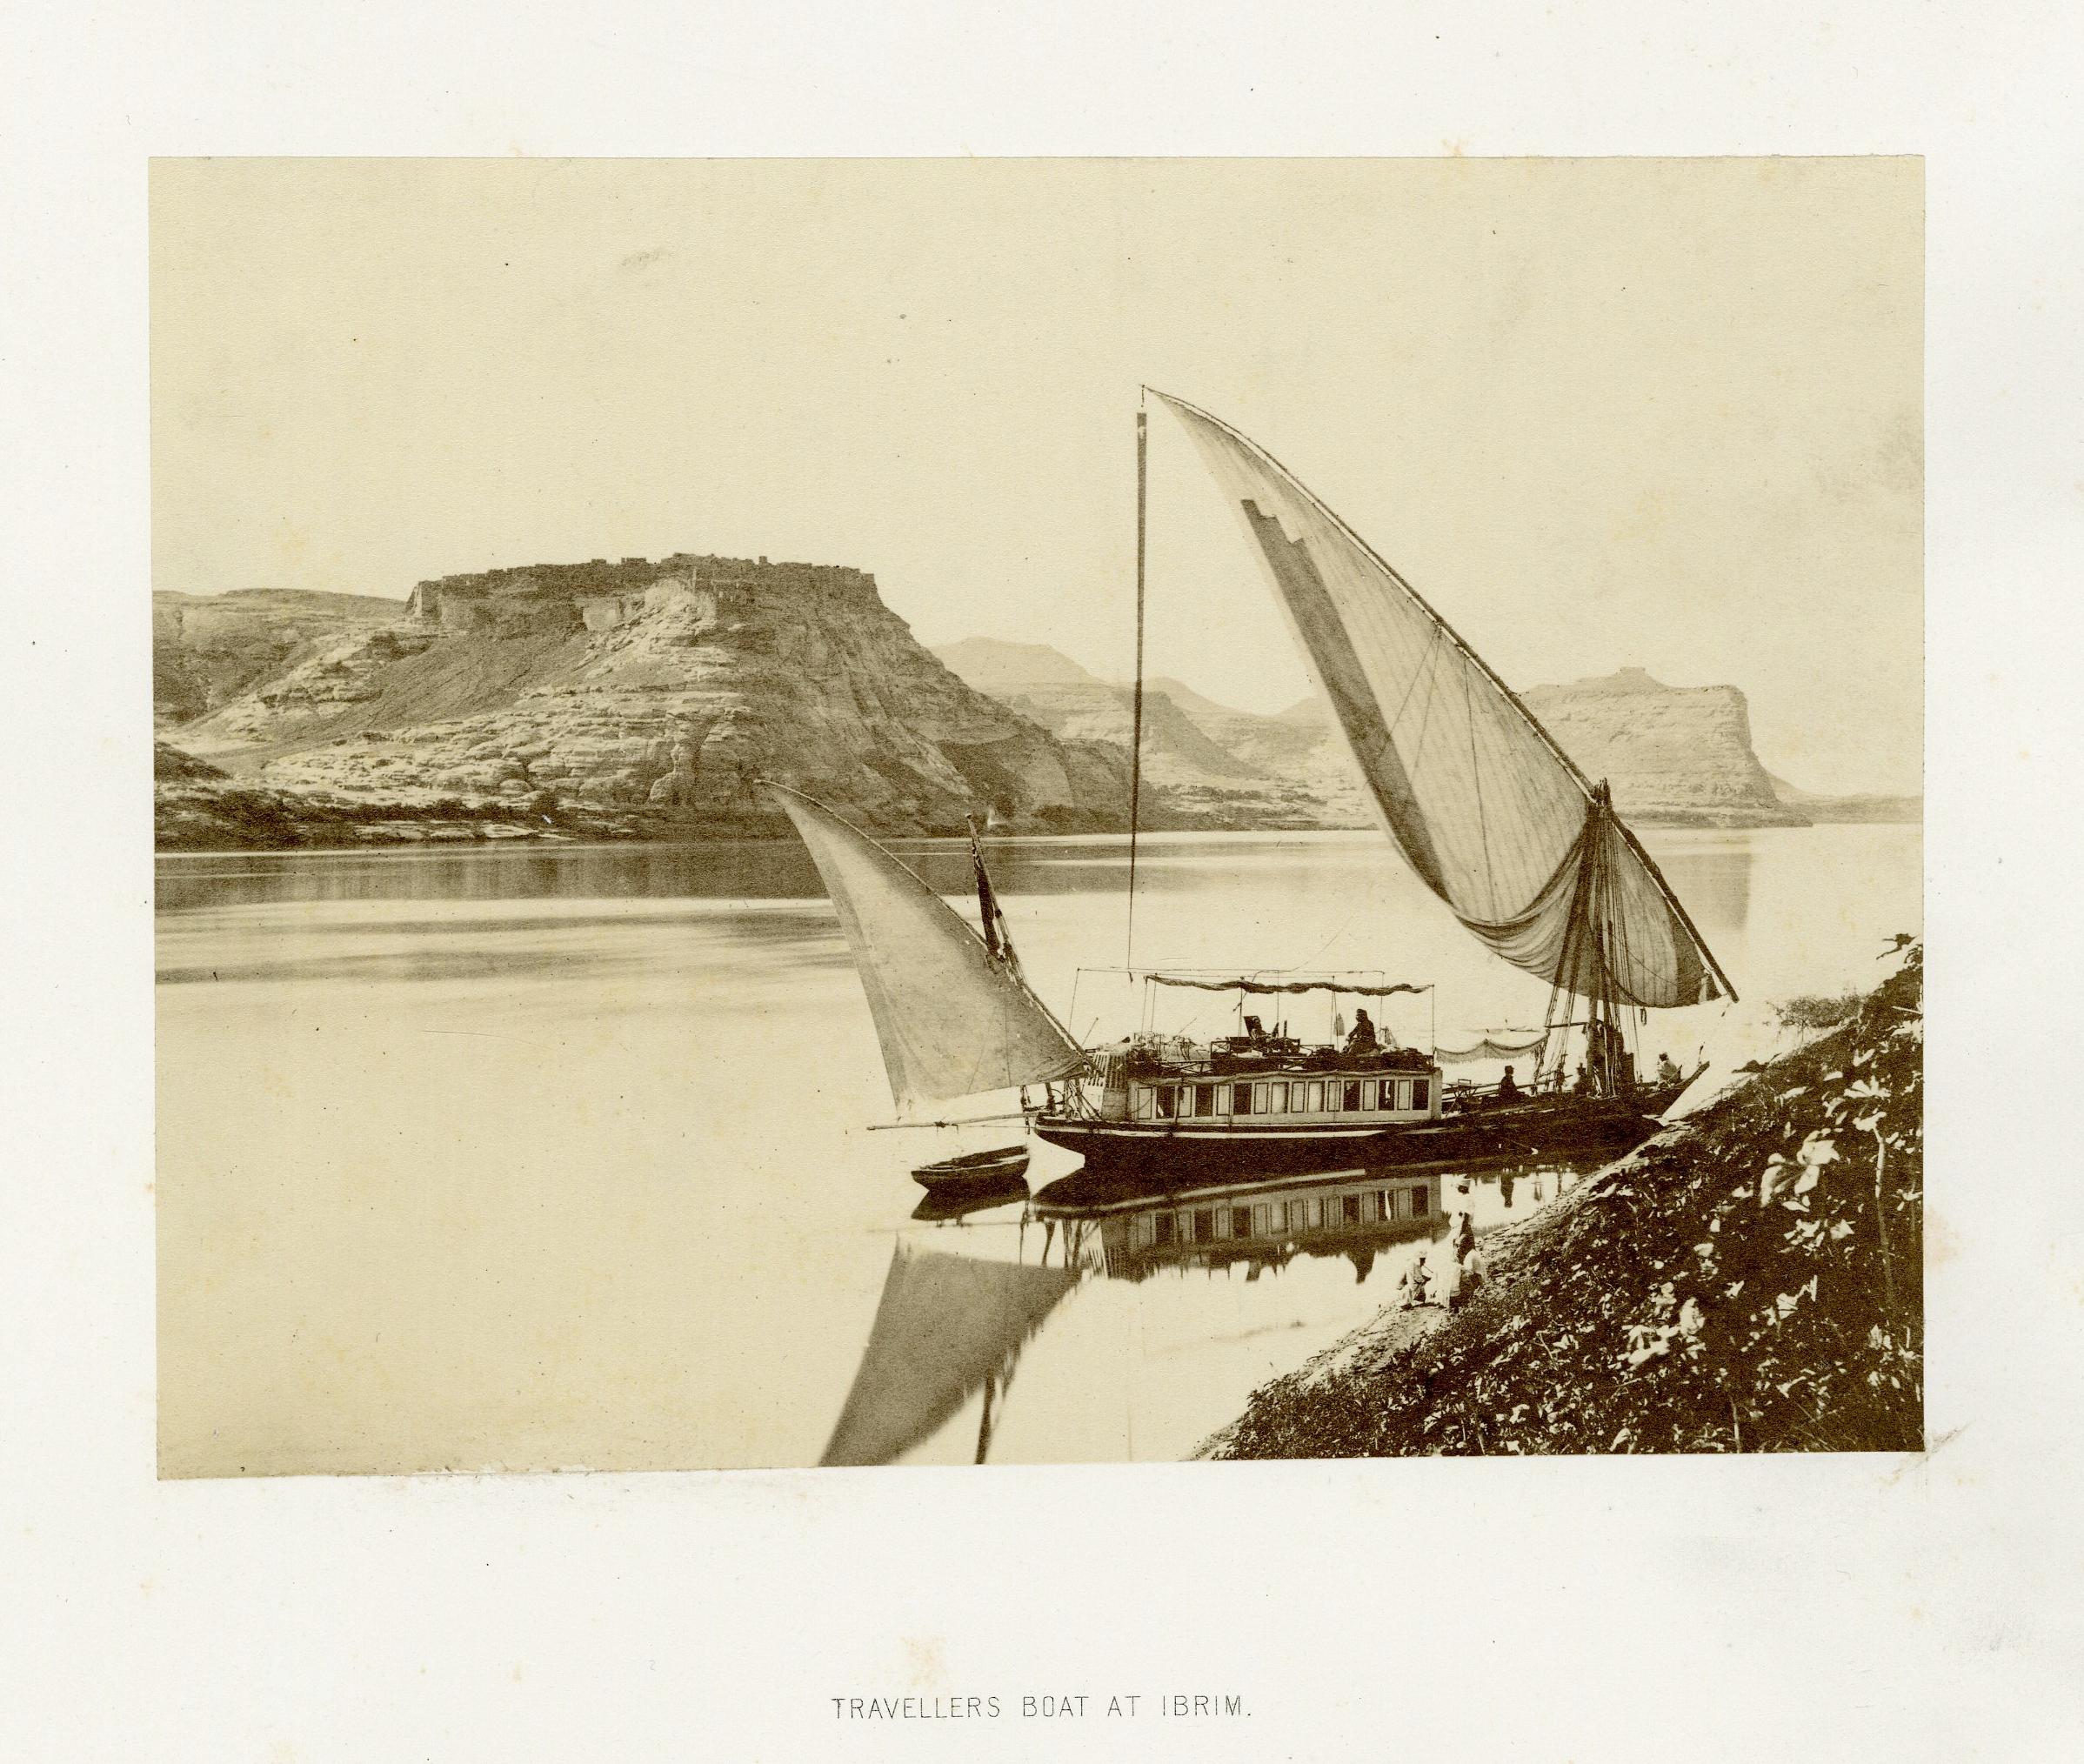 Travelers Boat at Ibrim